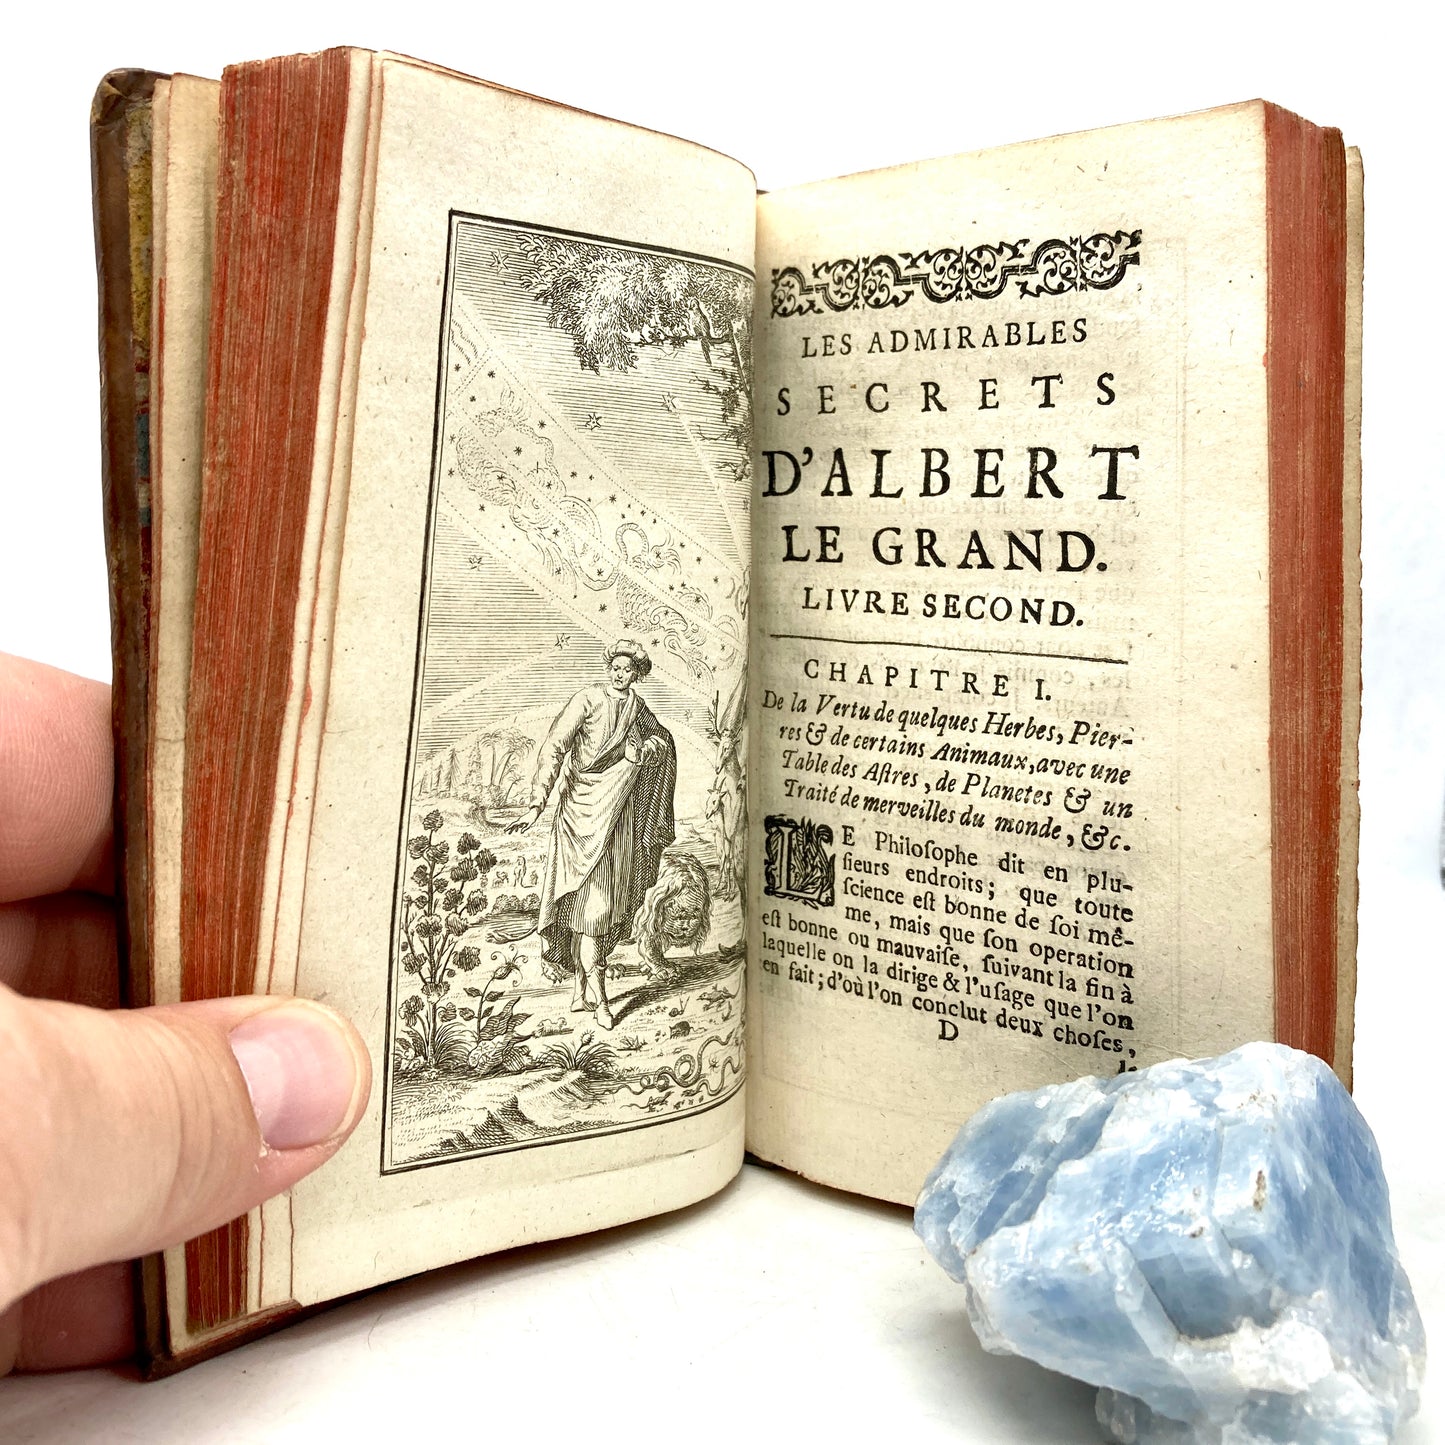 MAGNUS, Albertus "Les Admirables Secrets d'Albert le Grand" [Heritiers de Beringos, 1729]